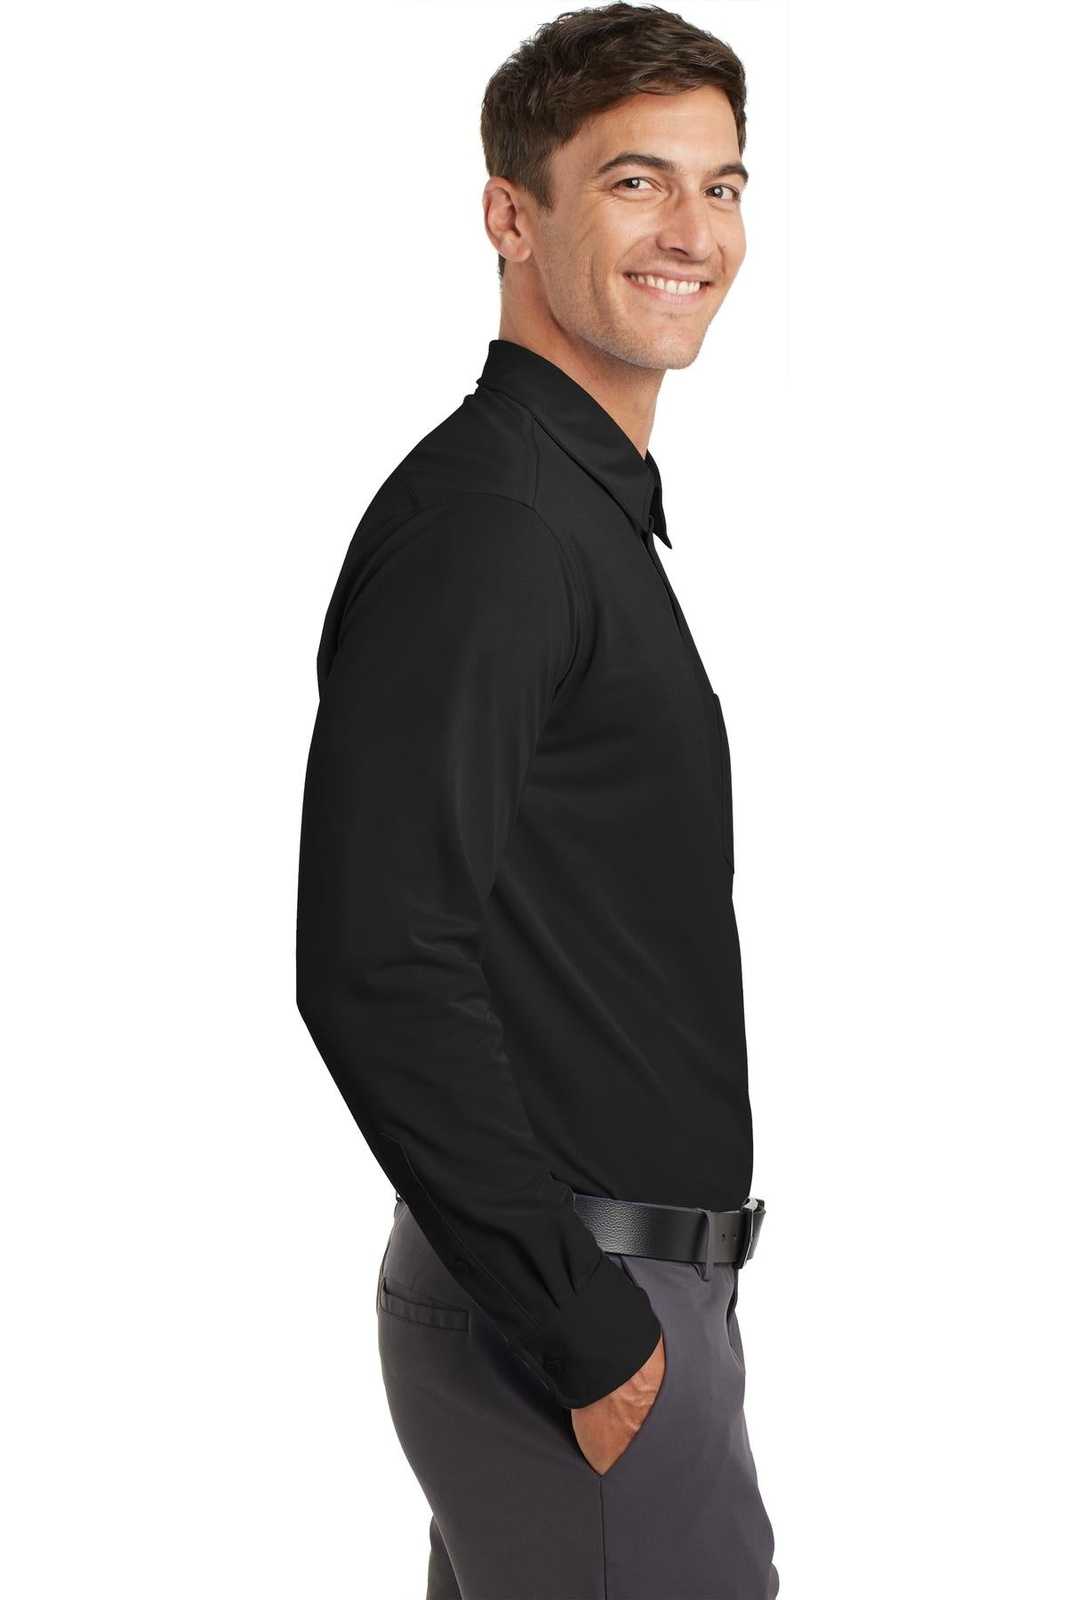 Port Authority K570 Dimension Knit Dress Shirt - Black - HIT a Double - 3